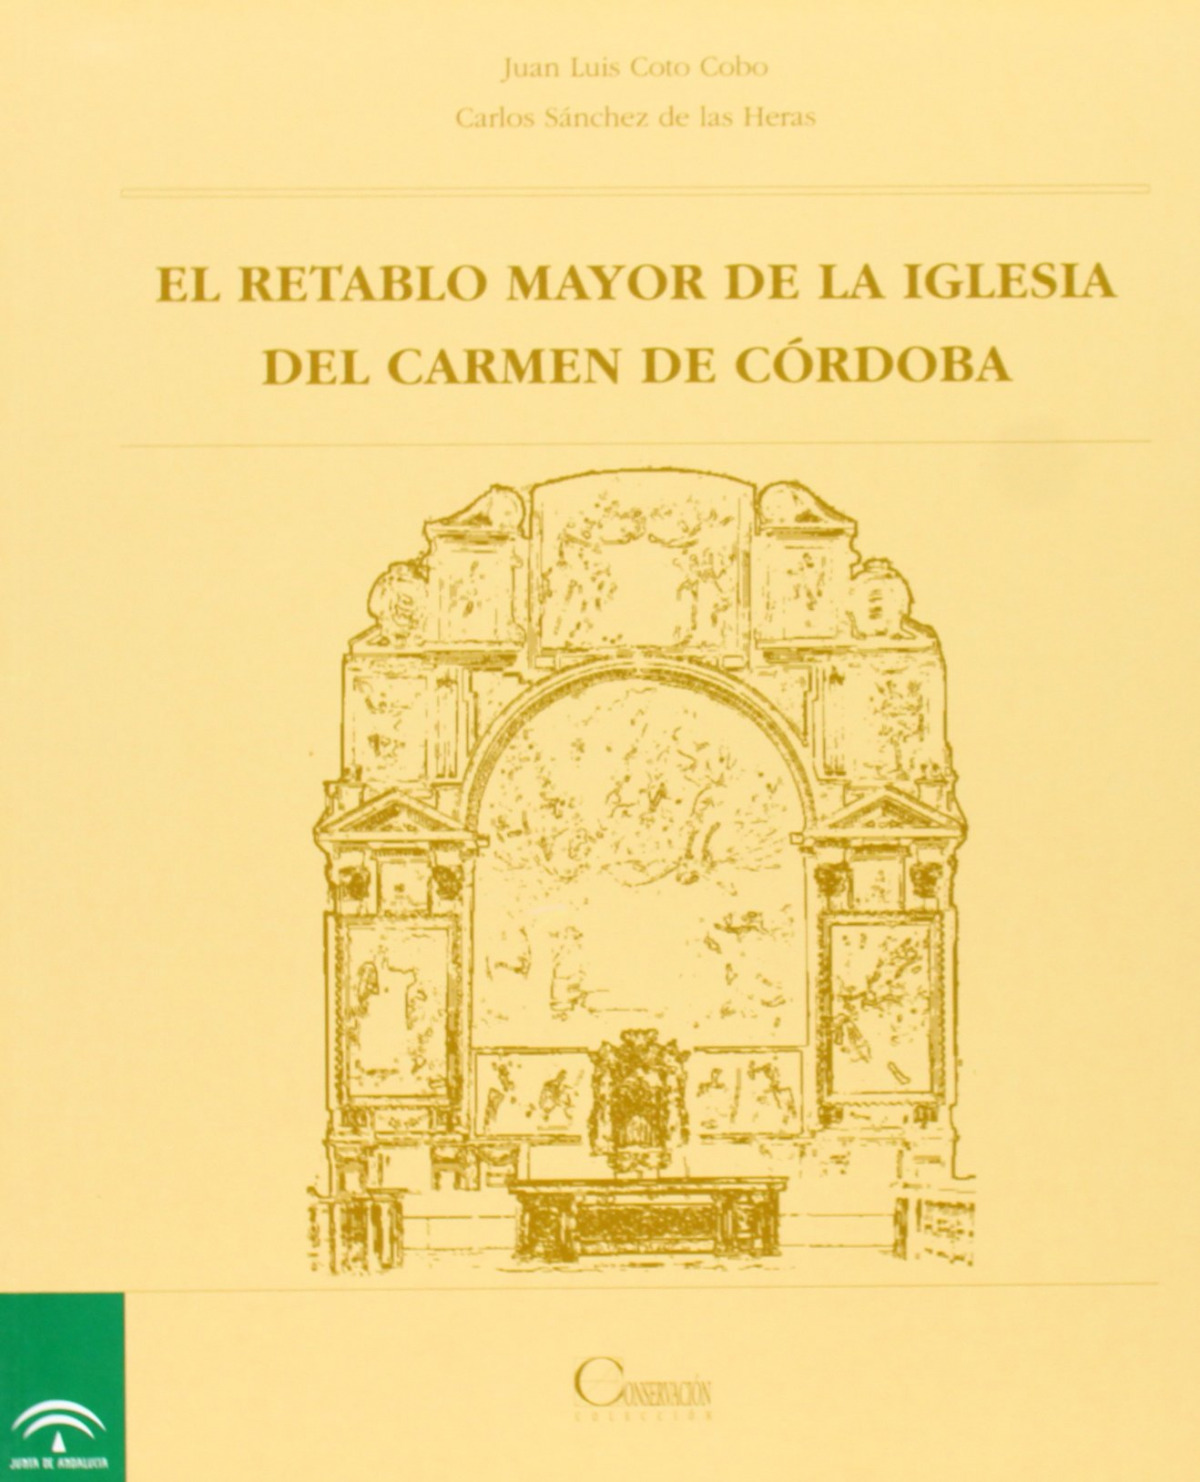 El retablo mayor de la iglesia del Carmen de Córdoba - Carlos Sánchez de las Heras/ Juan Luis